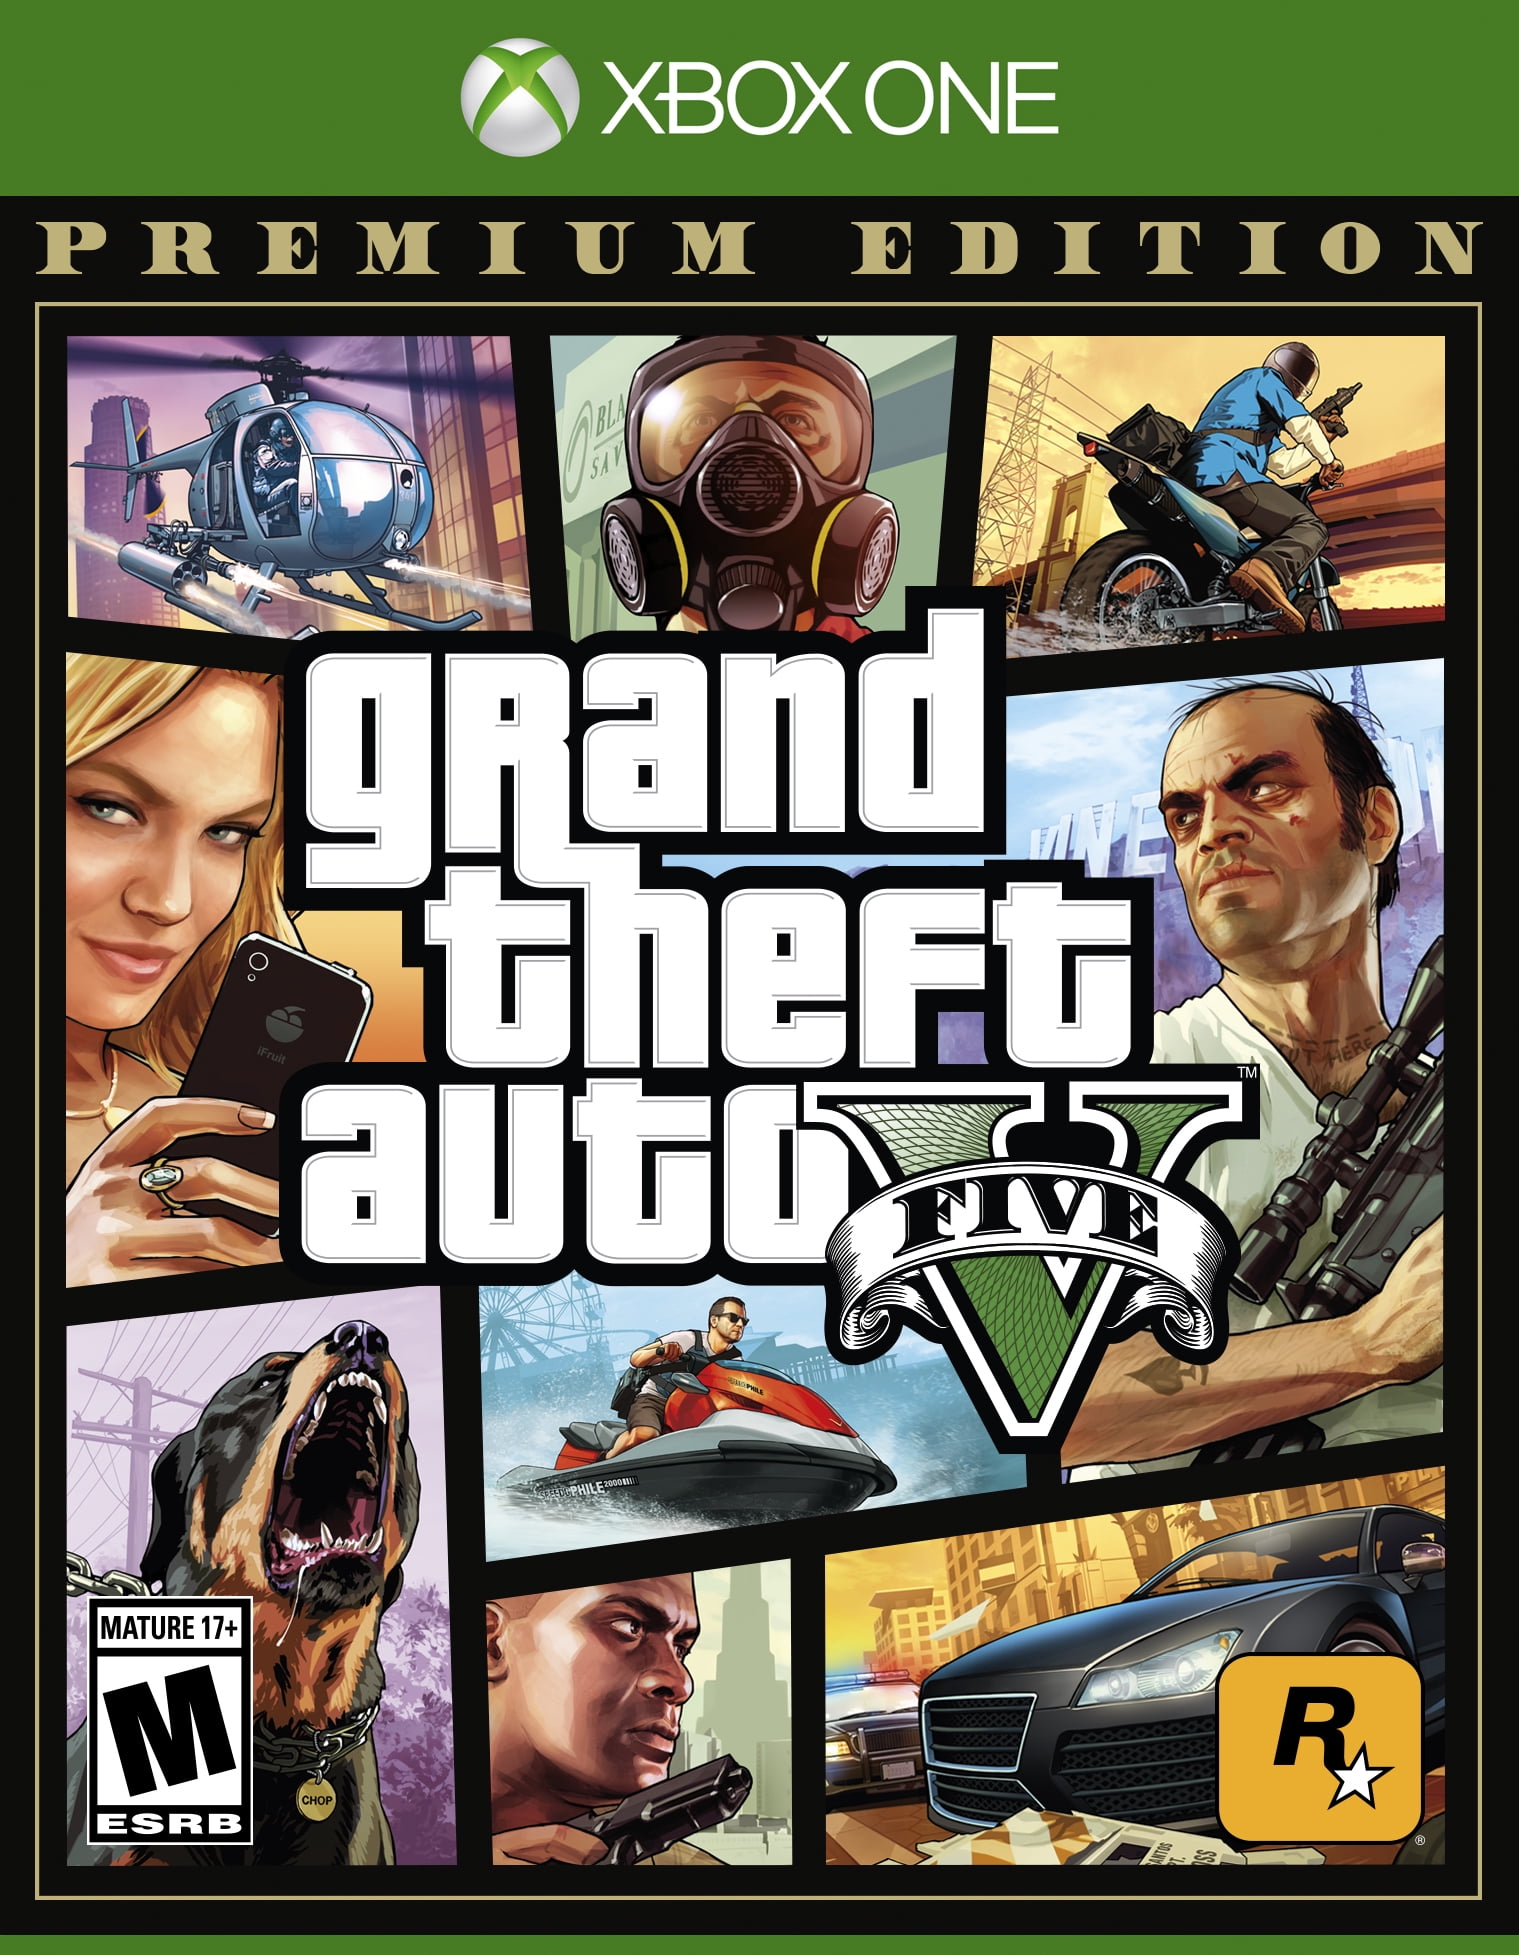  Grand Theft Auto V - Xbox 360 : Take 2 Interactive